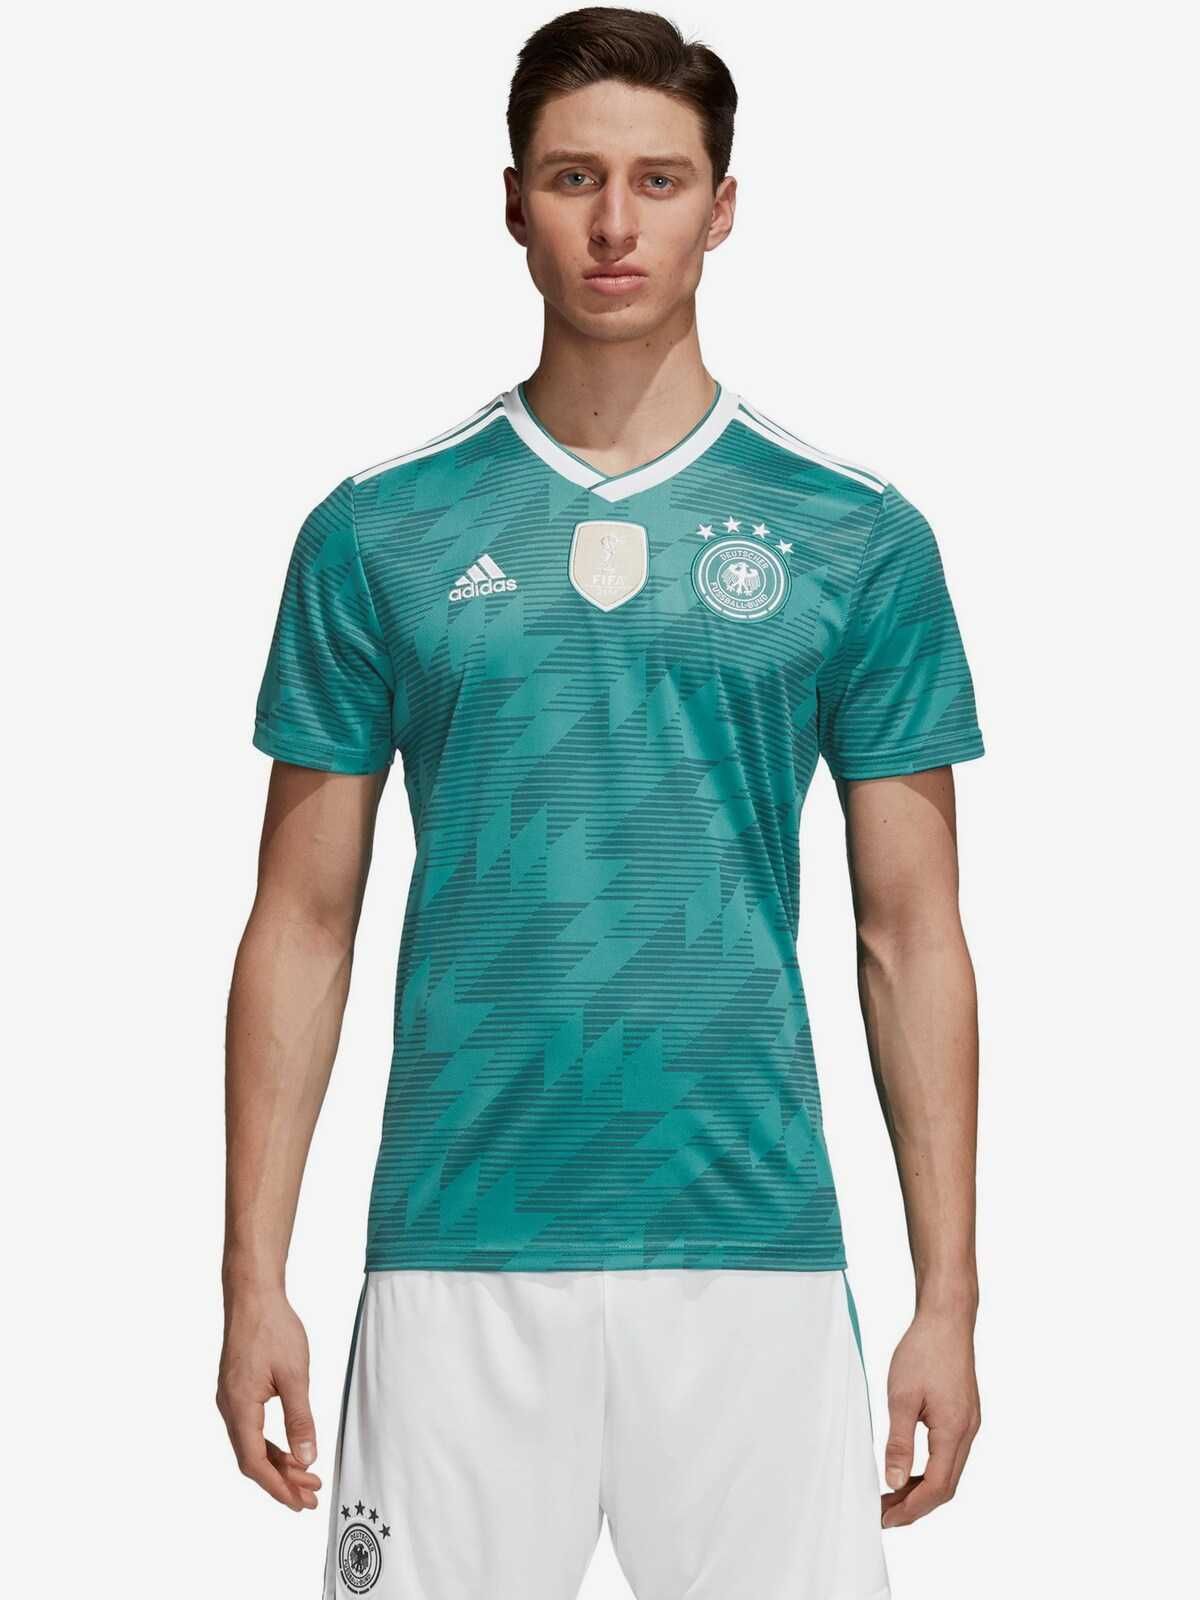 Футболка Adidas DFB Away 2018_Официальная Коллекция (оригинал)